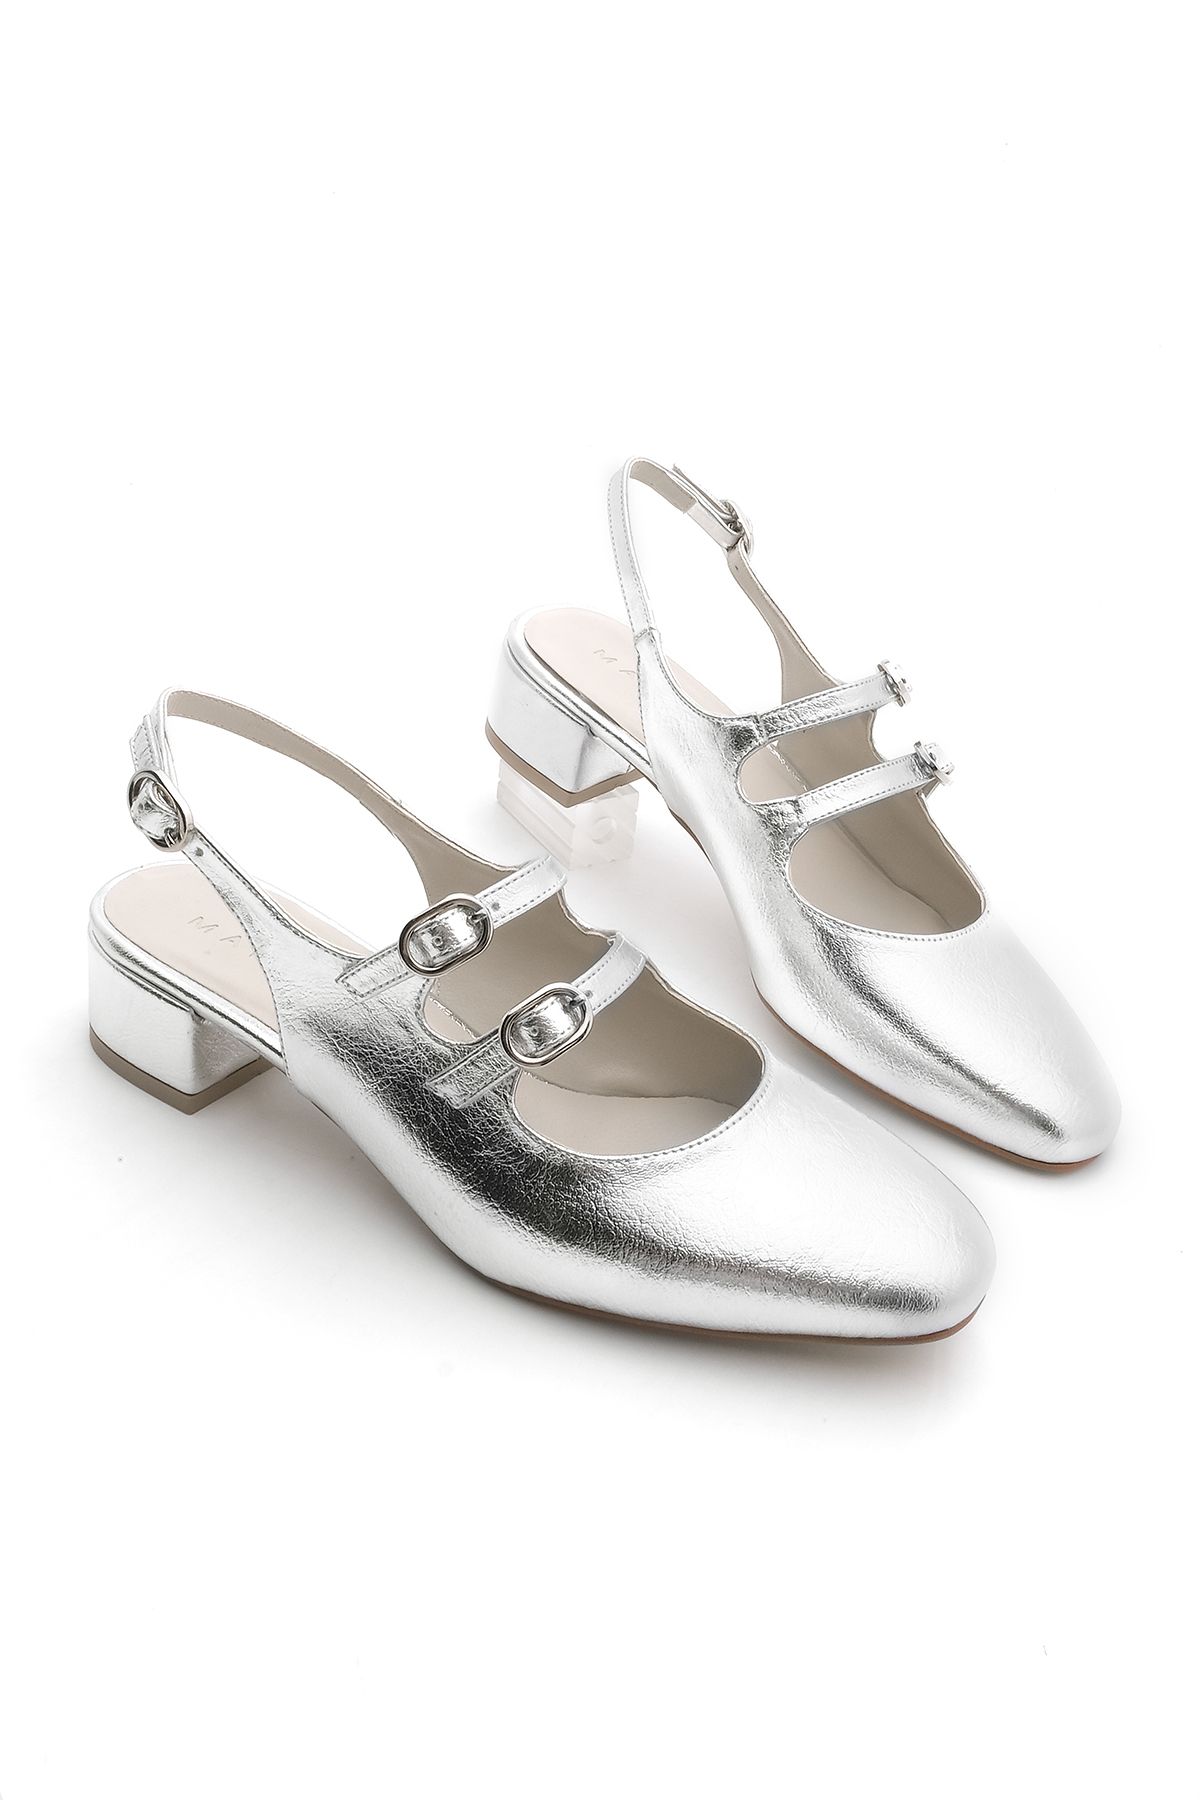 Marjin Kadın Çift Bantlı Arkası Açık Klasik Topuklu Ayakkabı Rosna Gümüş